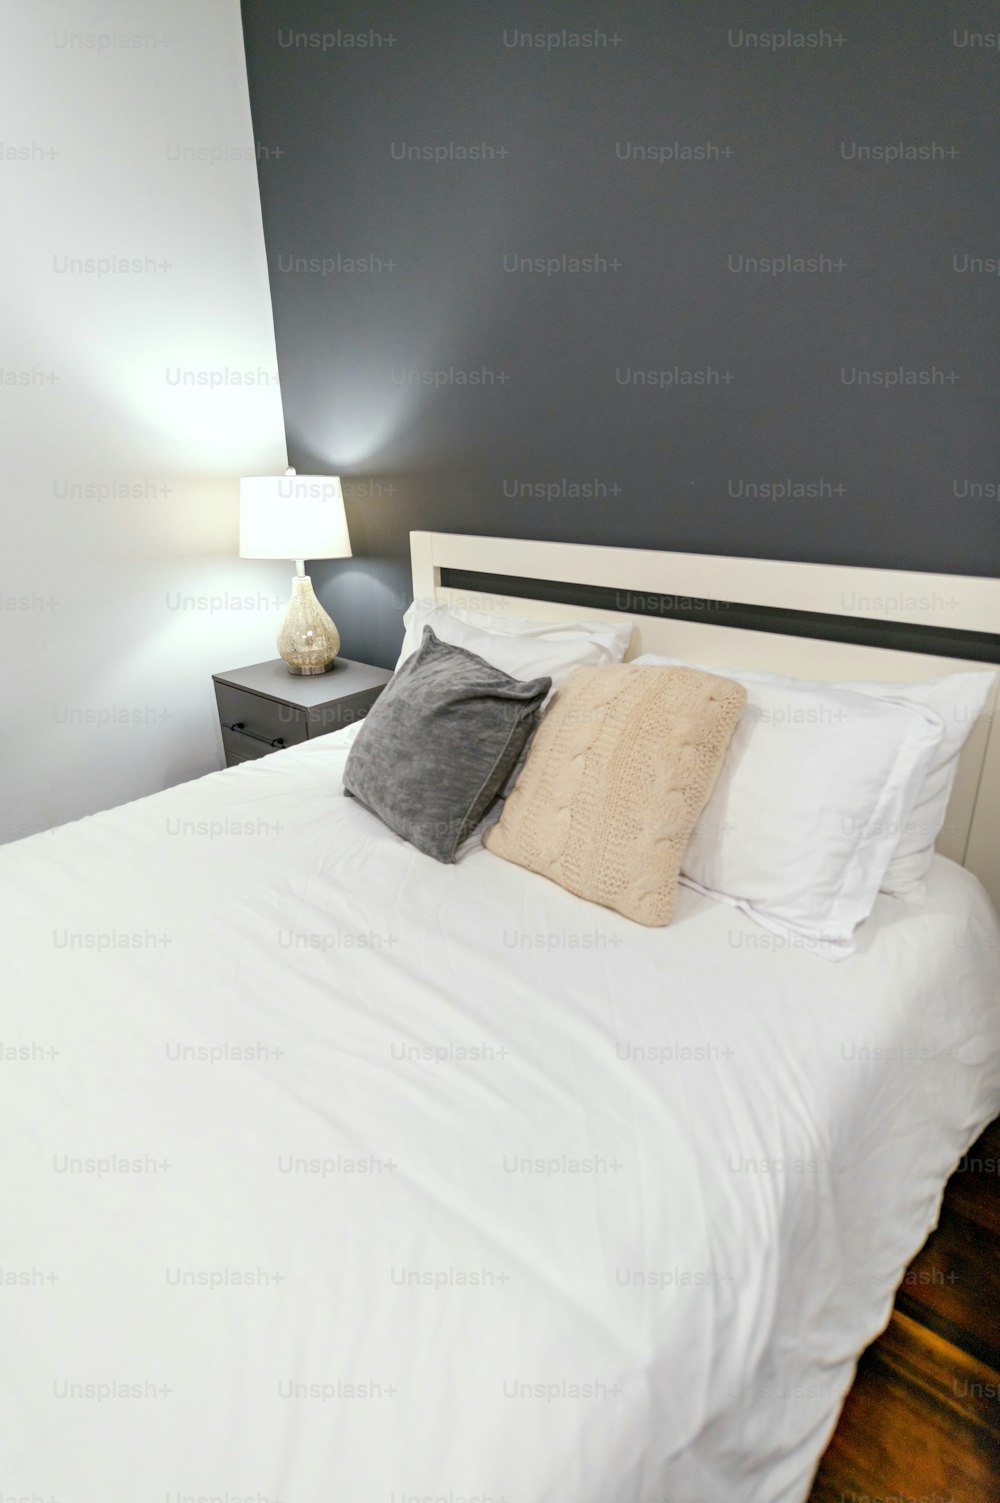 ein Bett mit einer weißen Bettdecke und zwei Lampen